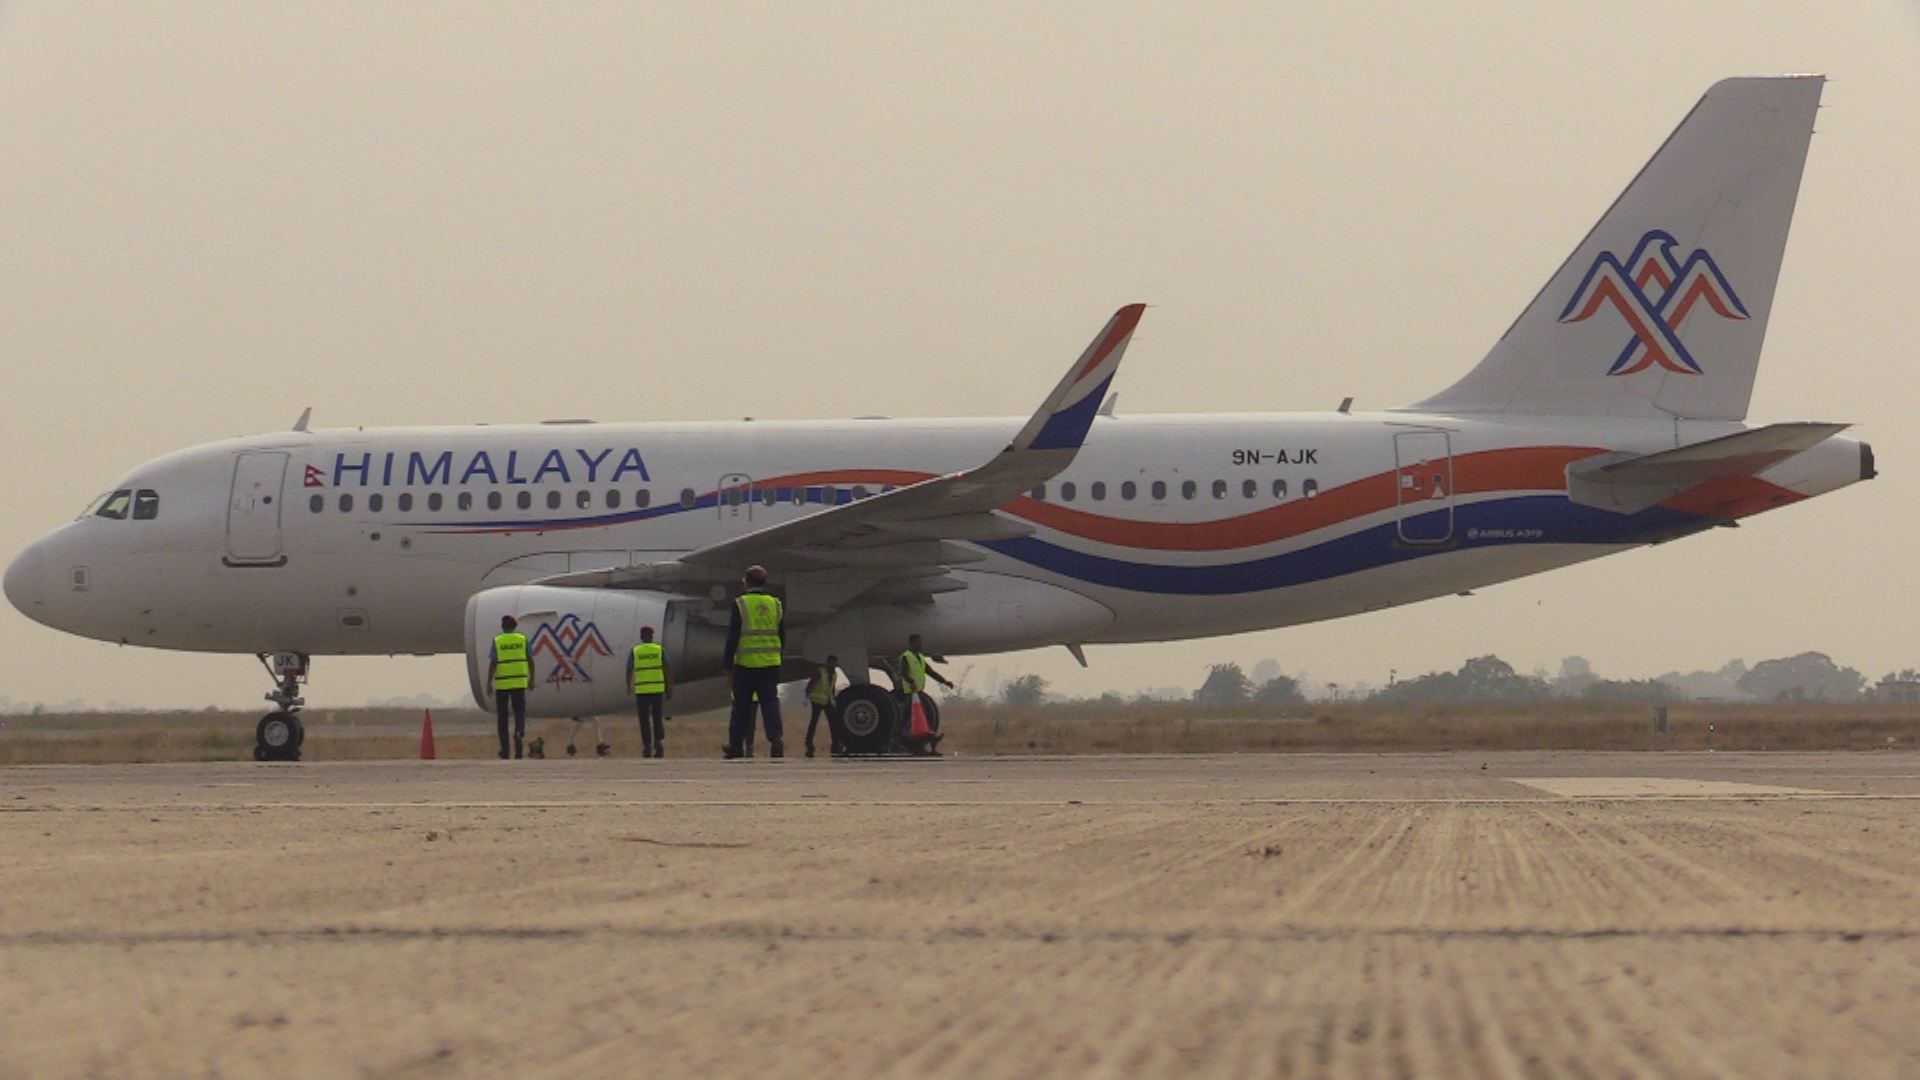 हिमालय एयरलाइन्सले सुरु गर्यो भैरहवाबाट चार्टर्ड उडान, विमानको चाप बढ्दै जाने